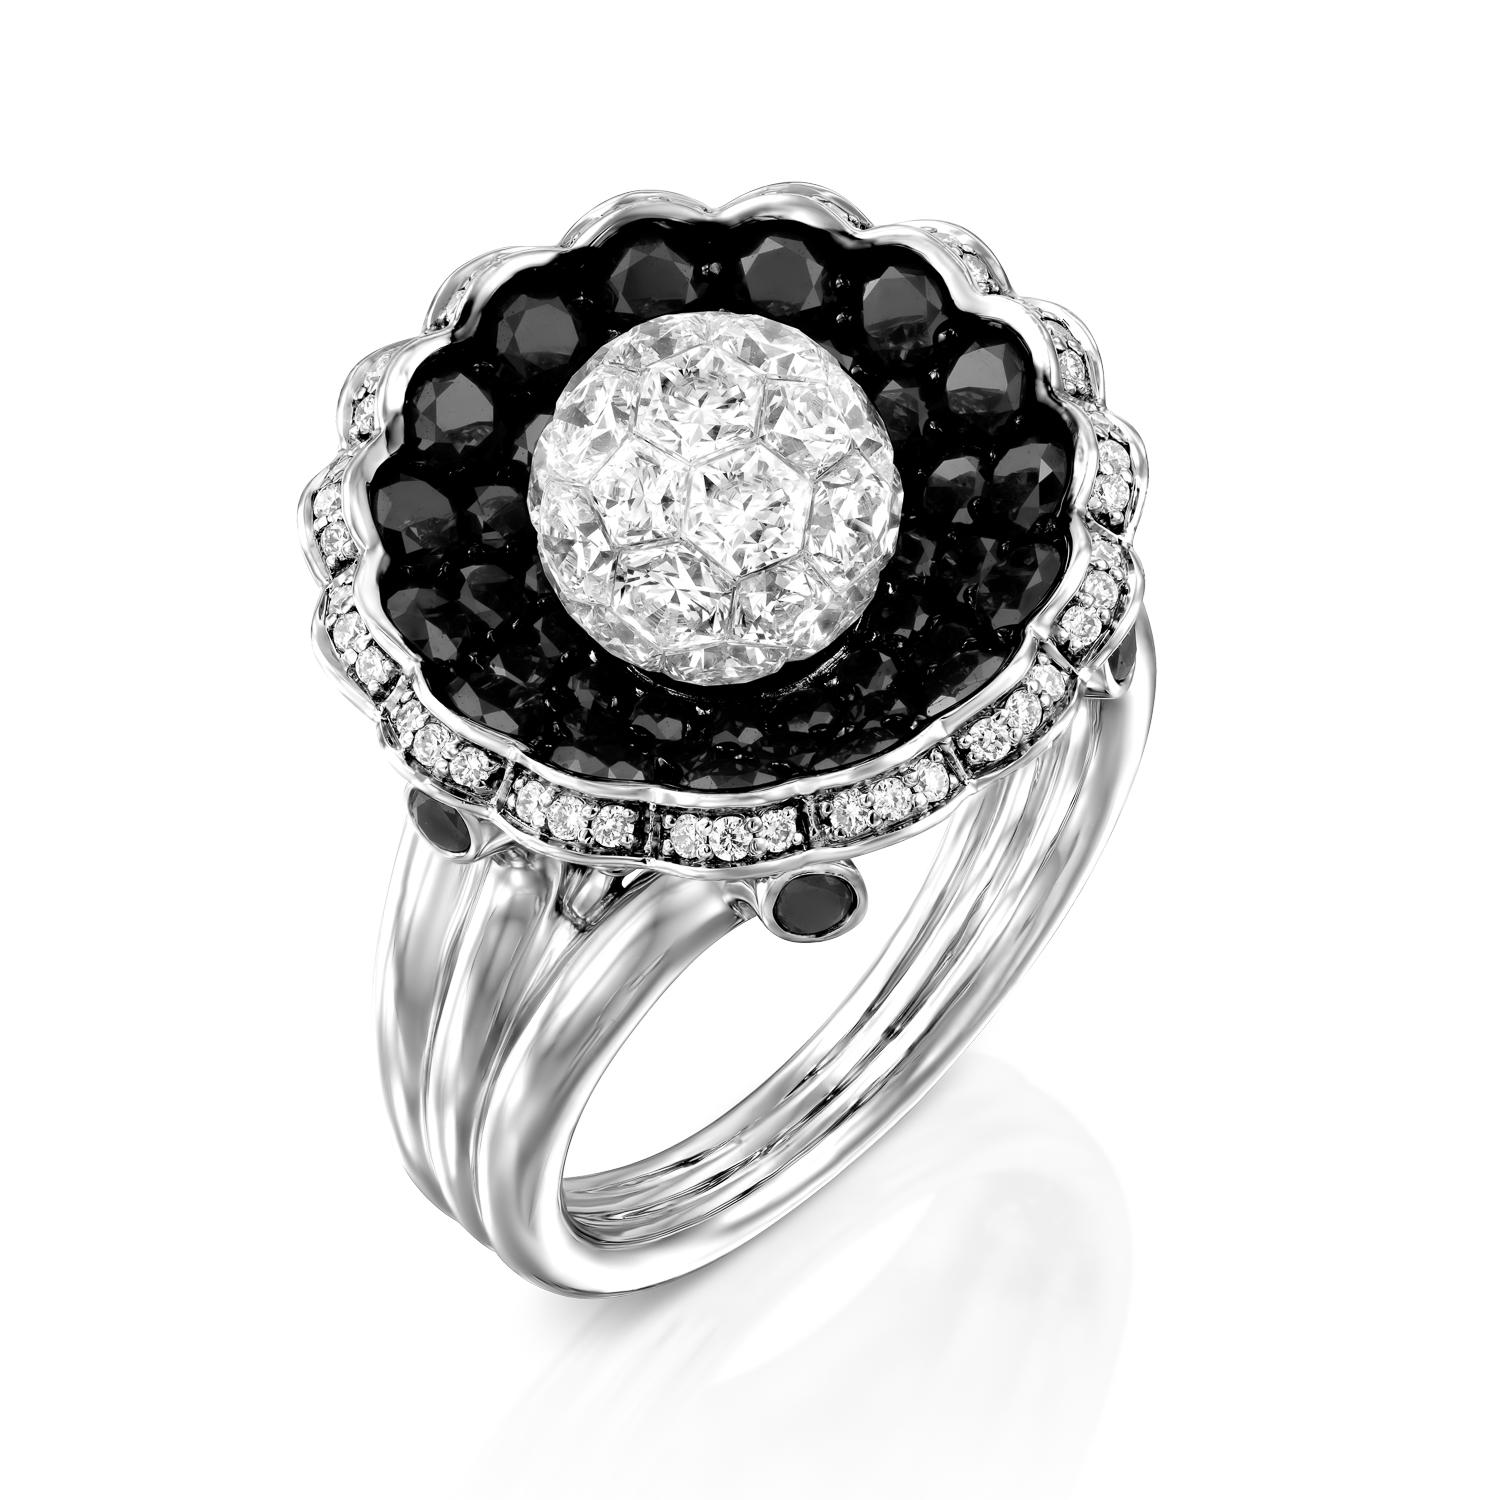 Gönnen Sie sich den ultimativen Luxus mit dem Geraldo Diamond Sphere White Black Diamonds Invisible Setting Ring, einem wahren Meisterwerk des Schmuckdesigns. Dieser Ring mit seiner atemberaubenden Diamantenkugel aus einer unsichtbaren Reihe runder